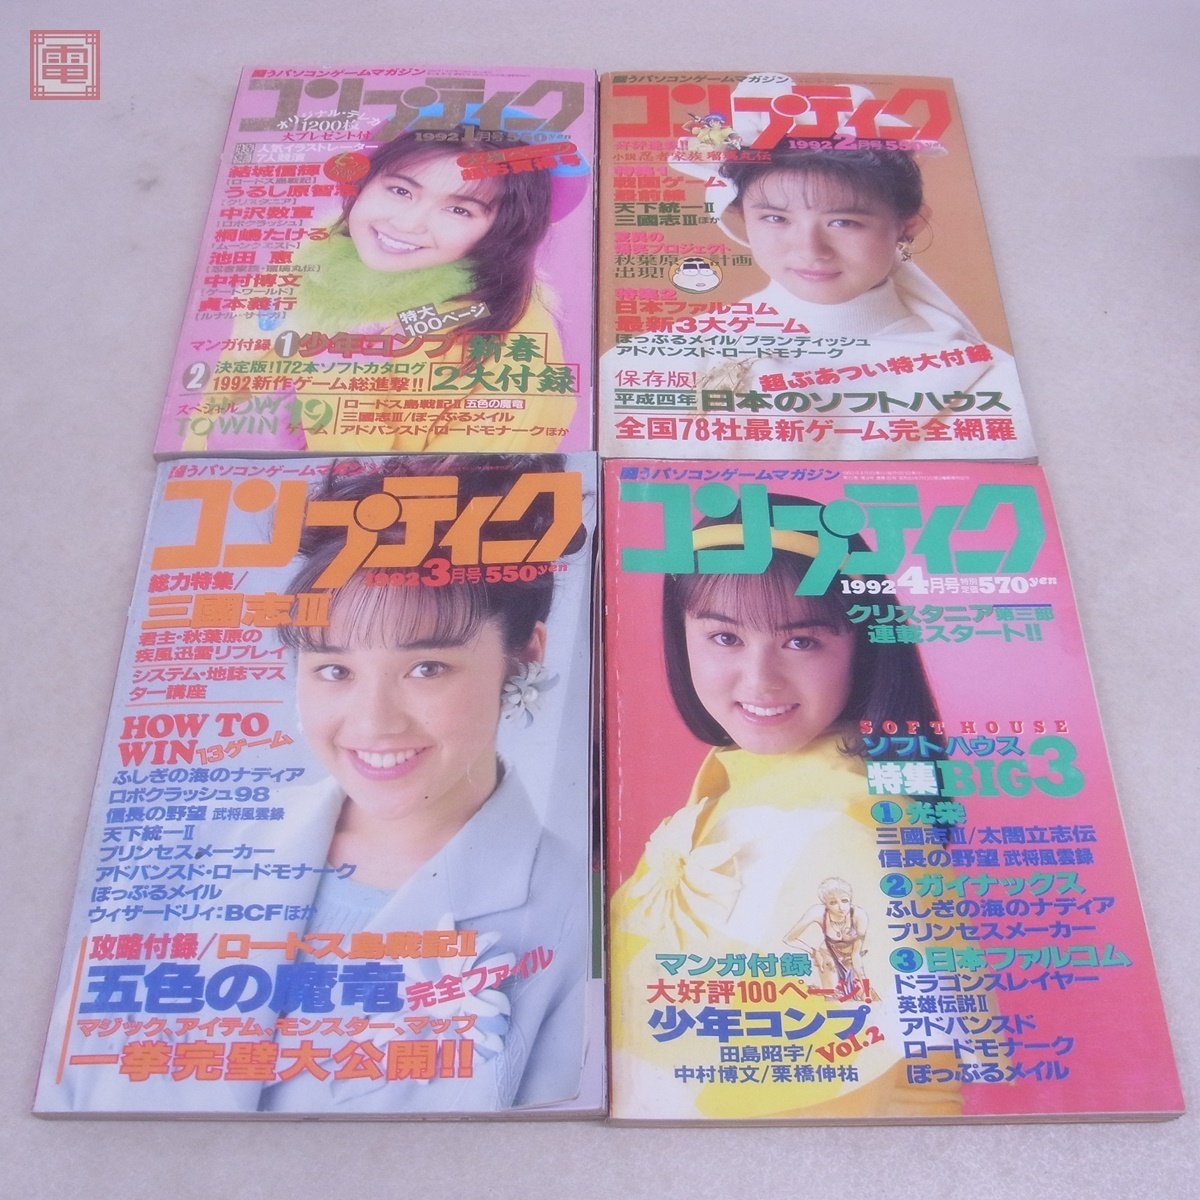  журнал ежемесячный comp чай k1992 год 1 месяц номер ~9 месяц номер не комплект совместно 8 шт. комплект Kadokawa Shoten не осмотр товар [20